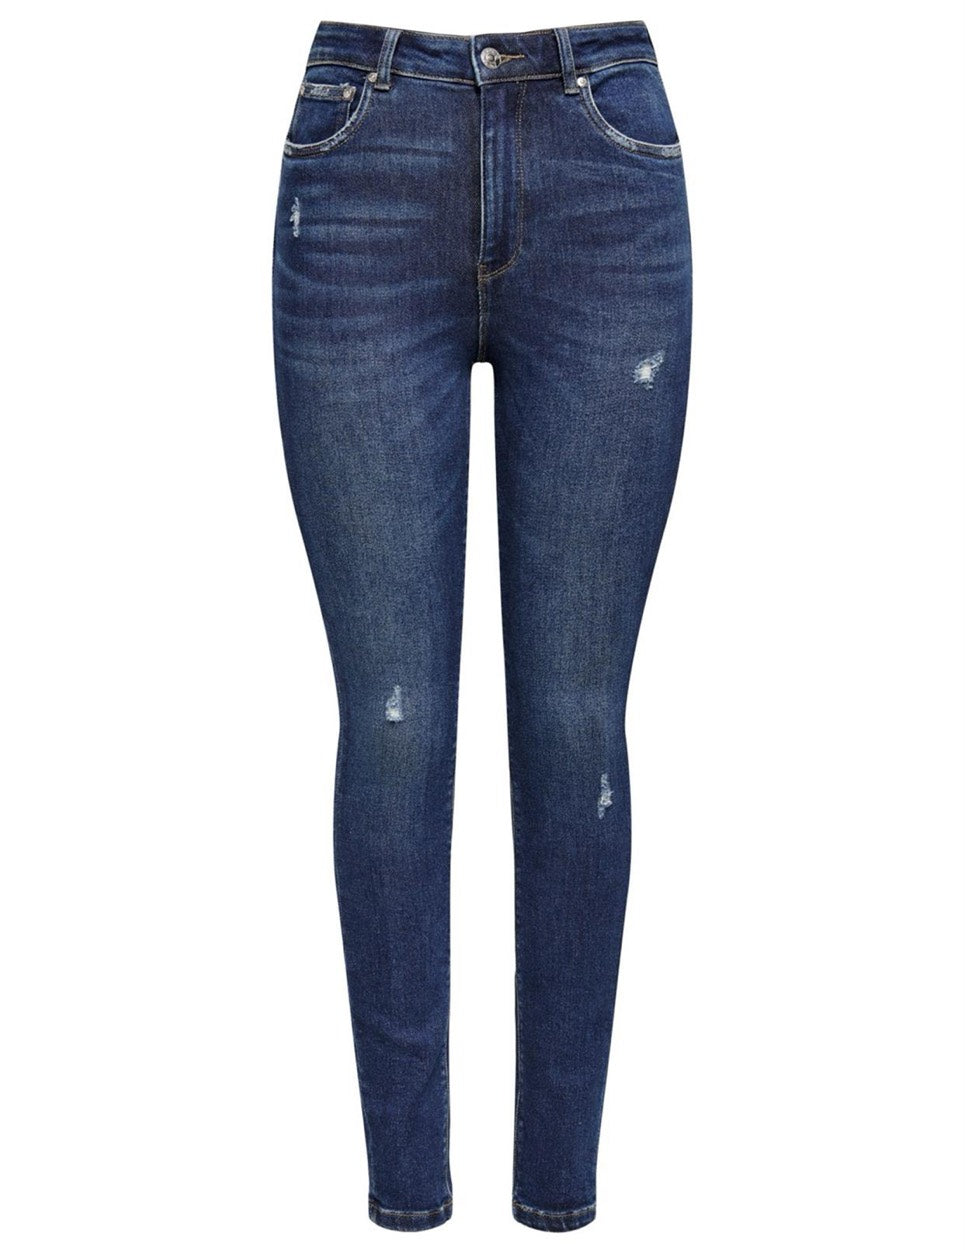 Highwaist, Ankle Skinny Jeans Mila - Blue Denim